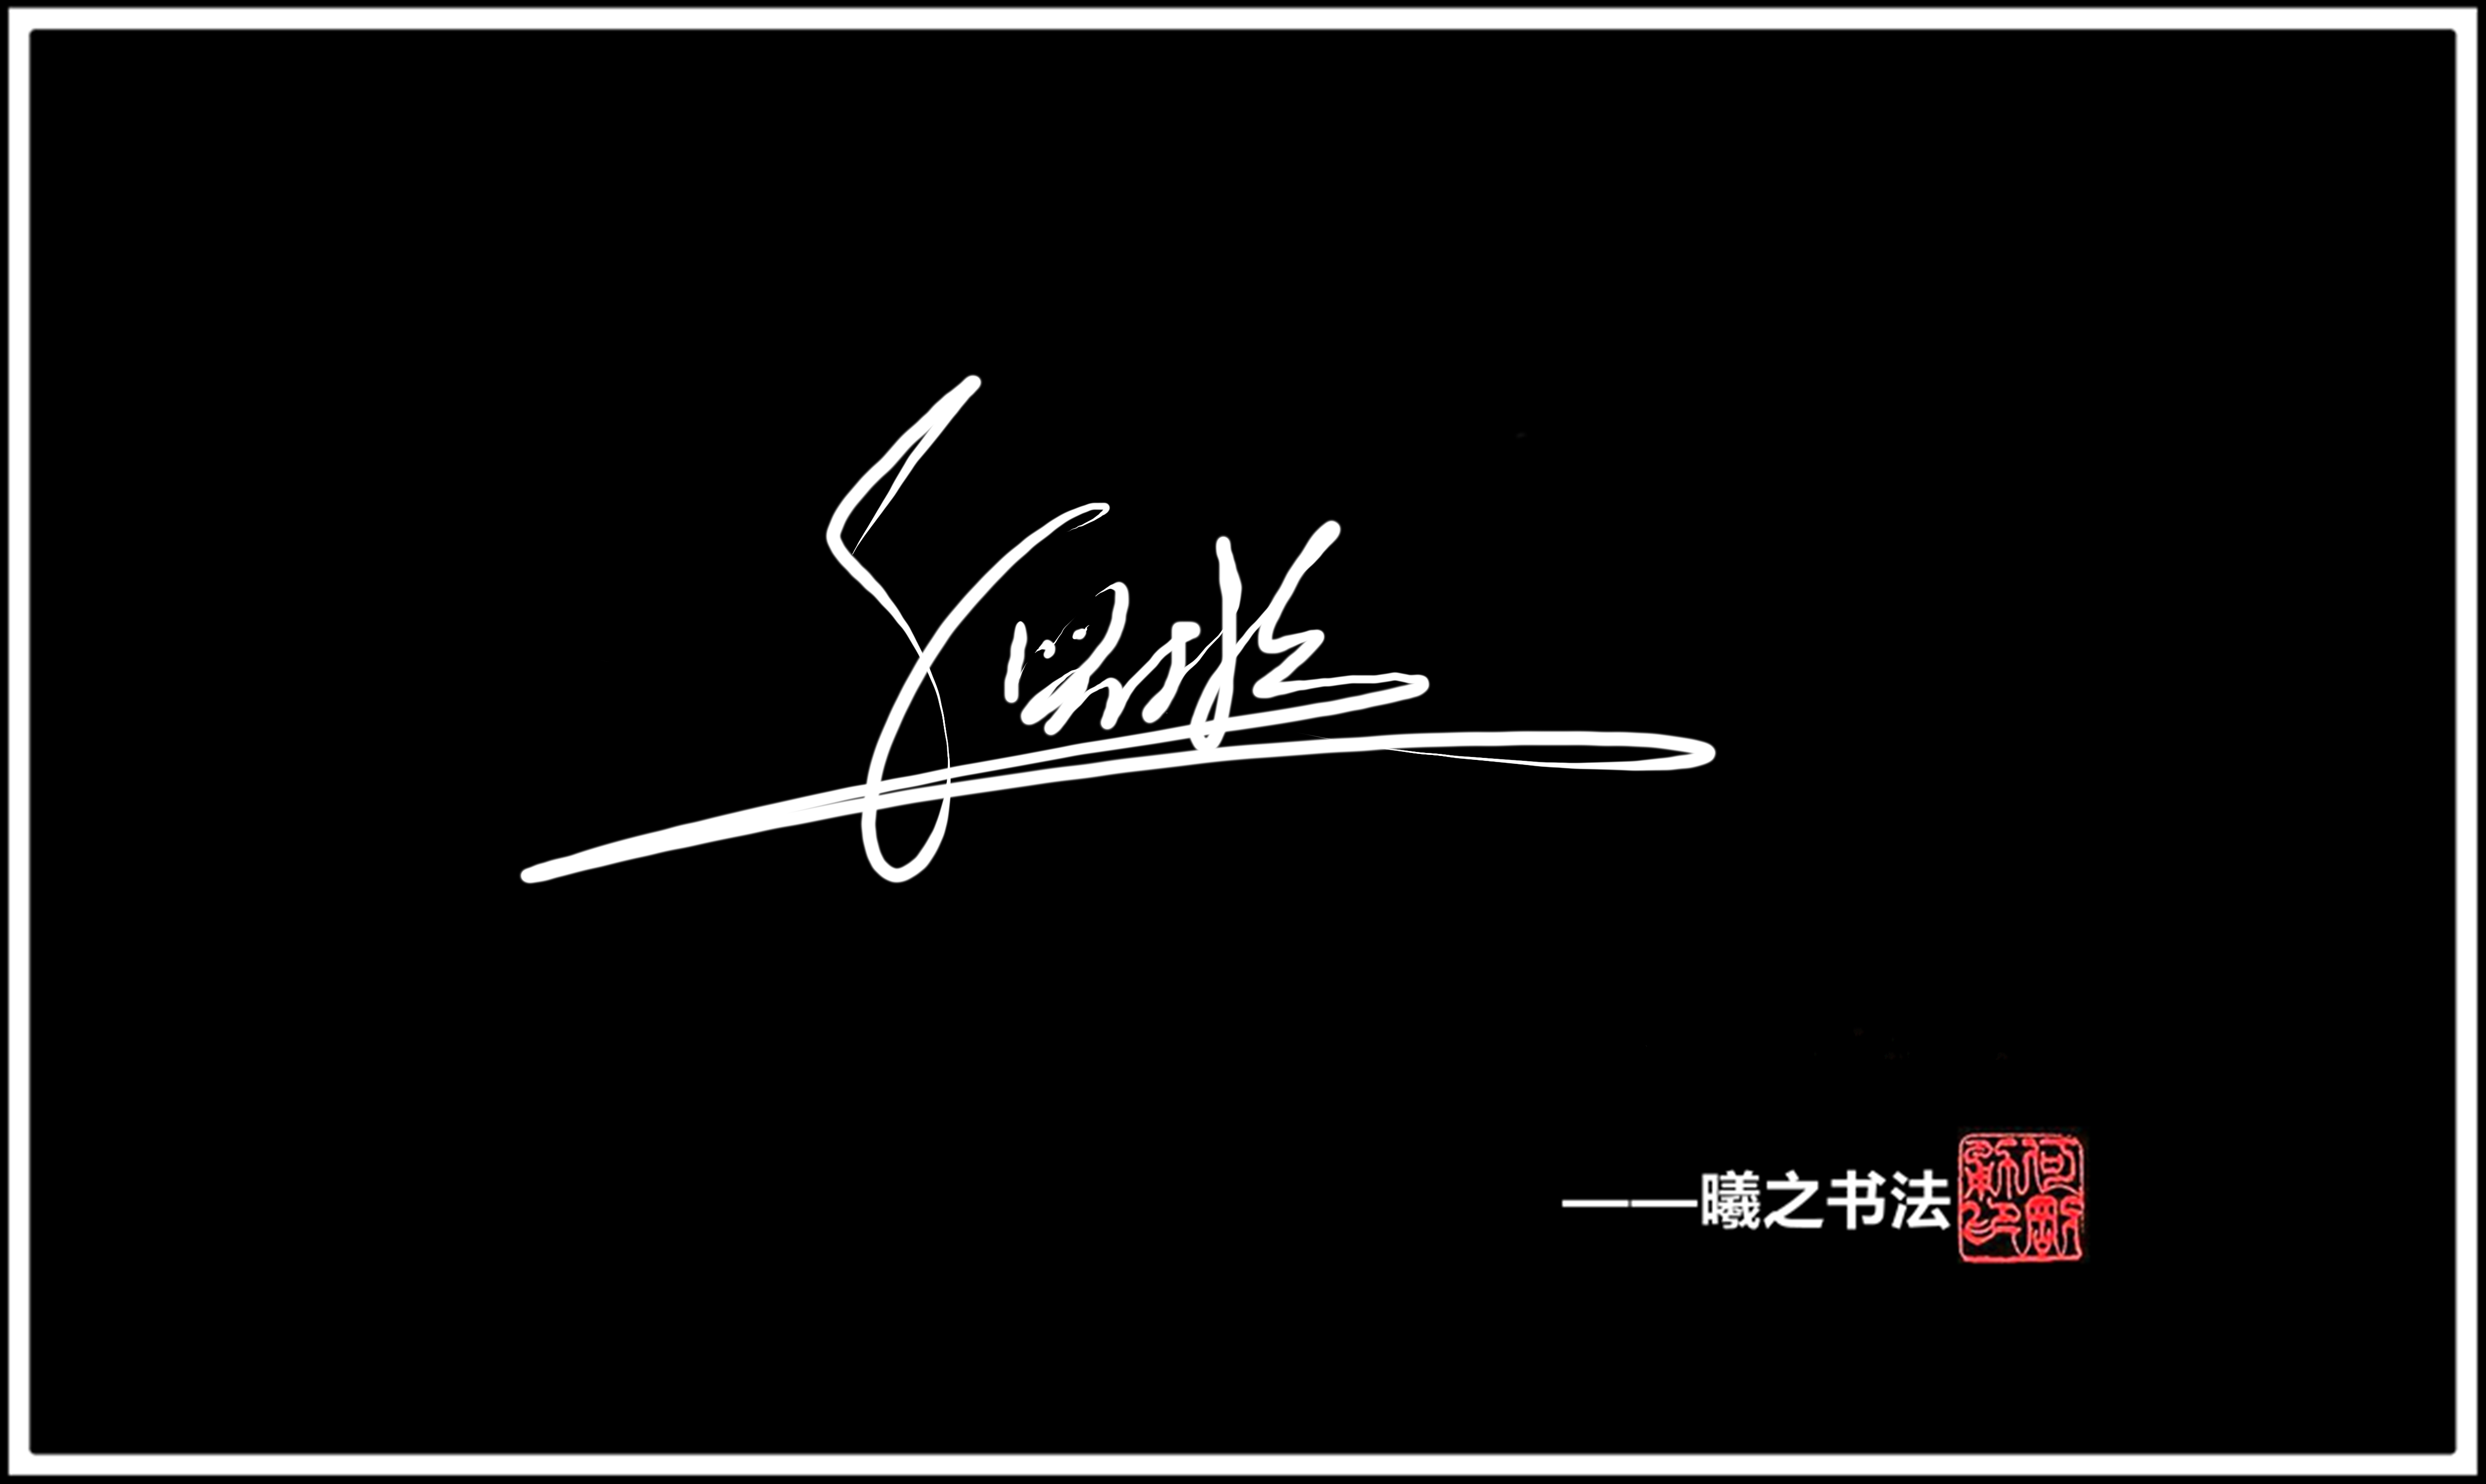 倪- 高端艺术签名设计免费在线制作设计连笔曦之签名网